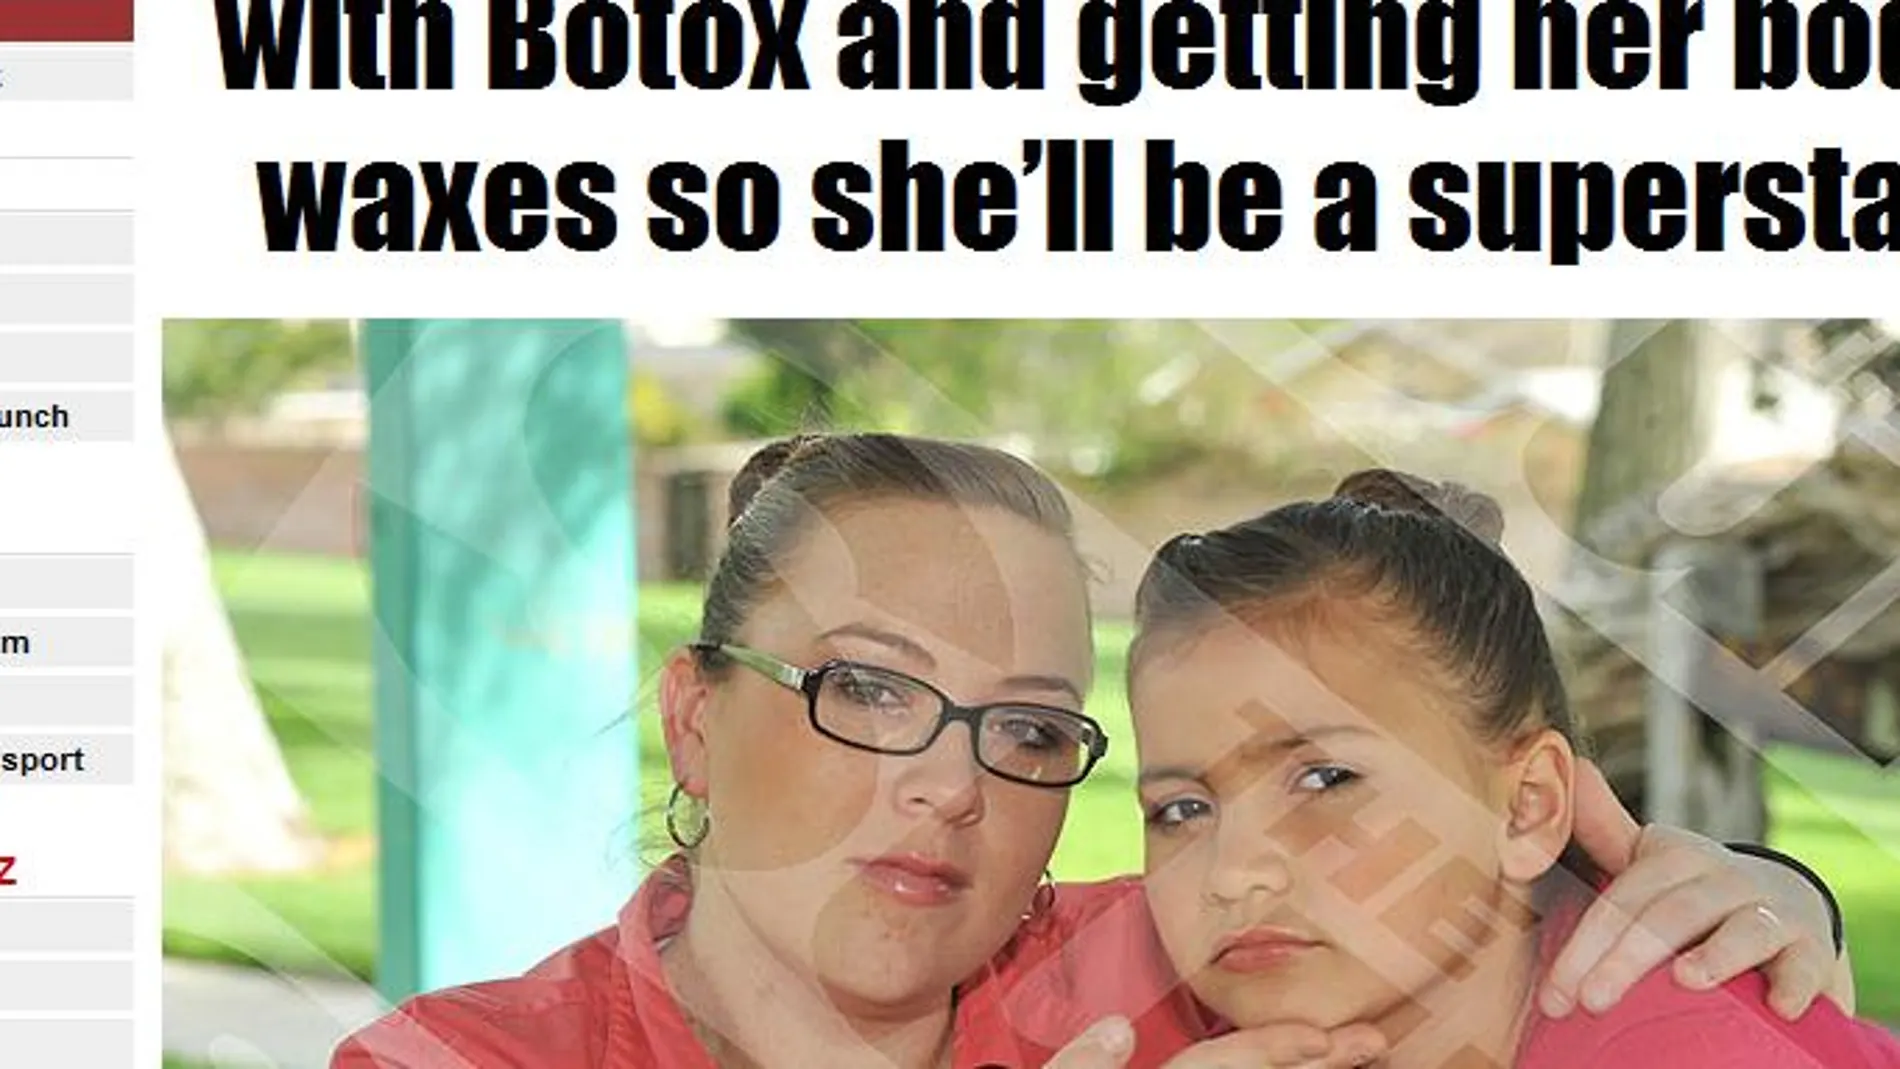 La madre lleva a Britney Cambell, de 8 años, a una clínica de belleza a recibir un tratamiento de botox